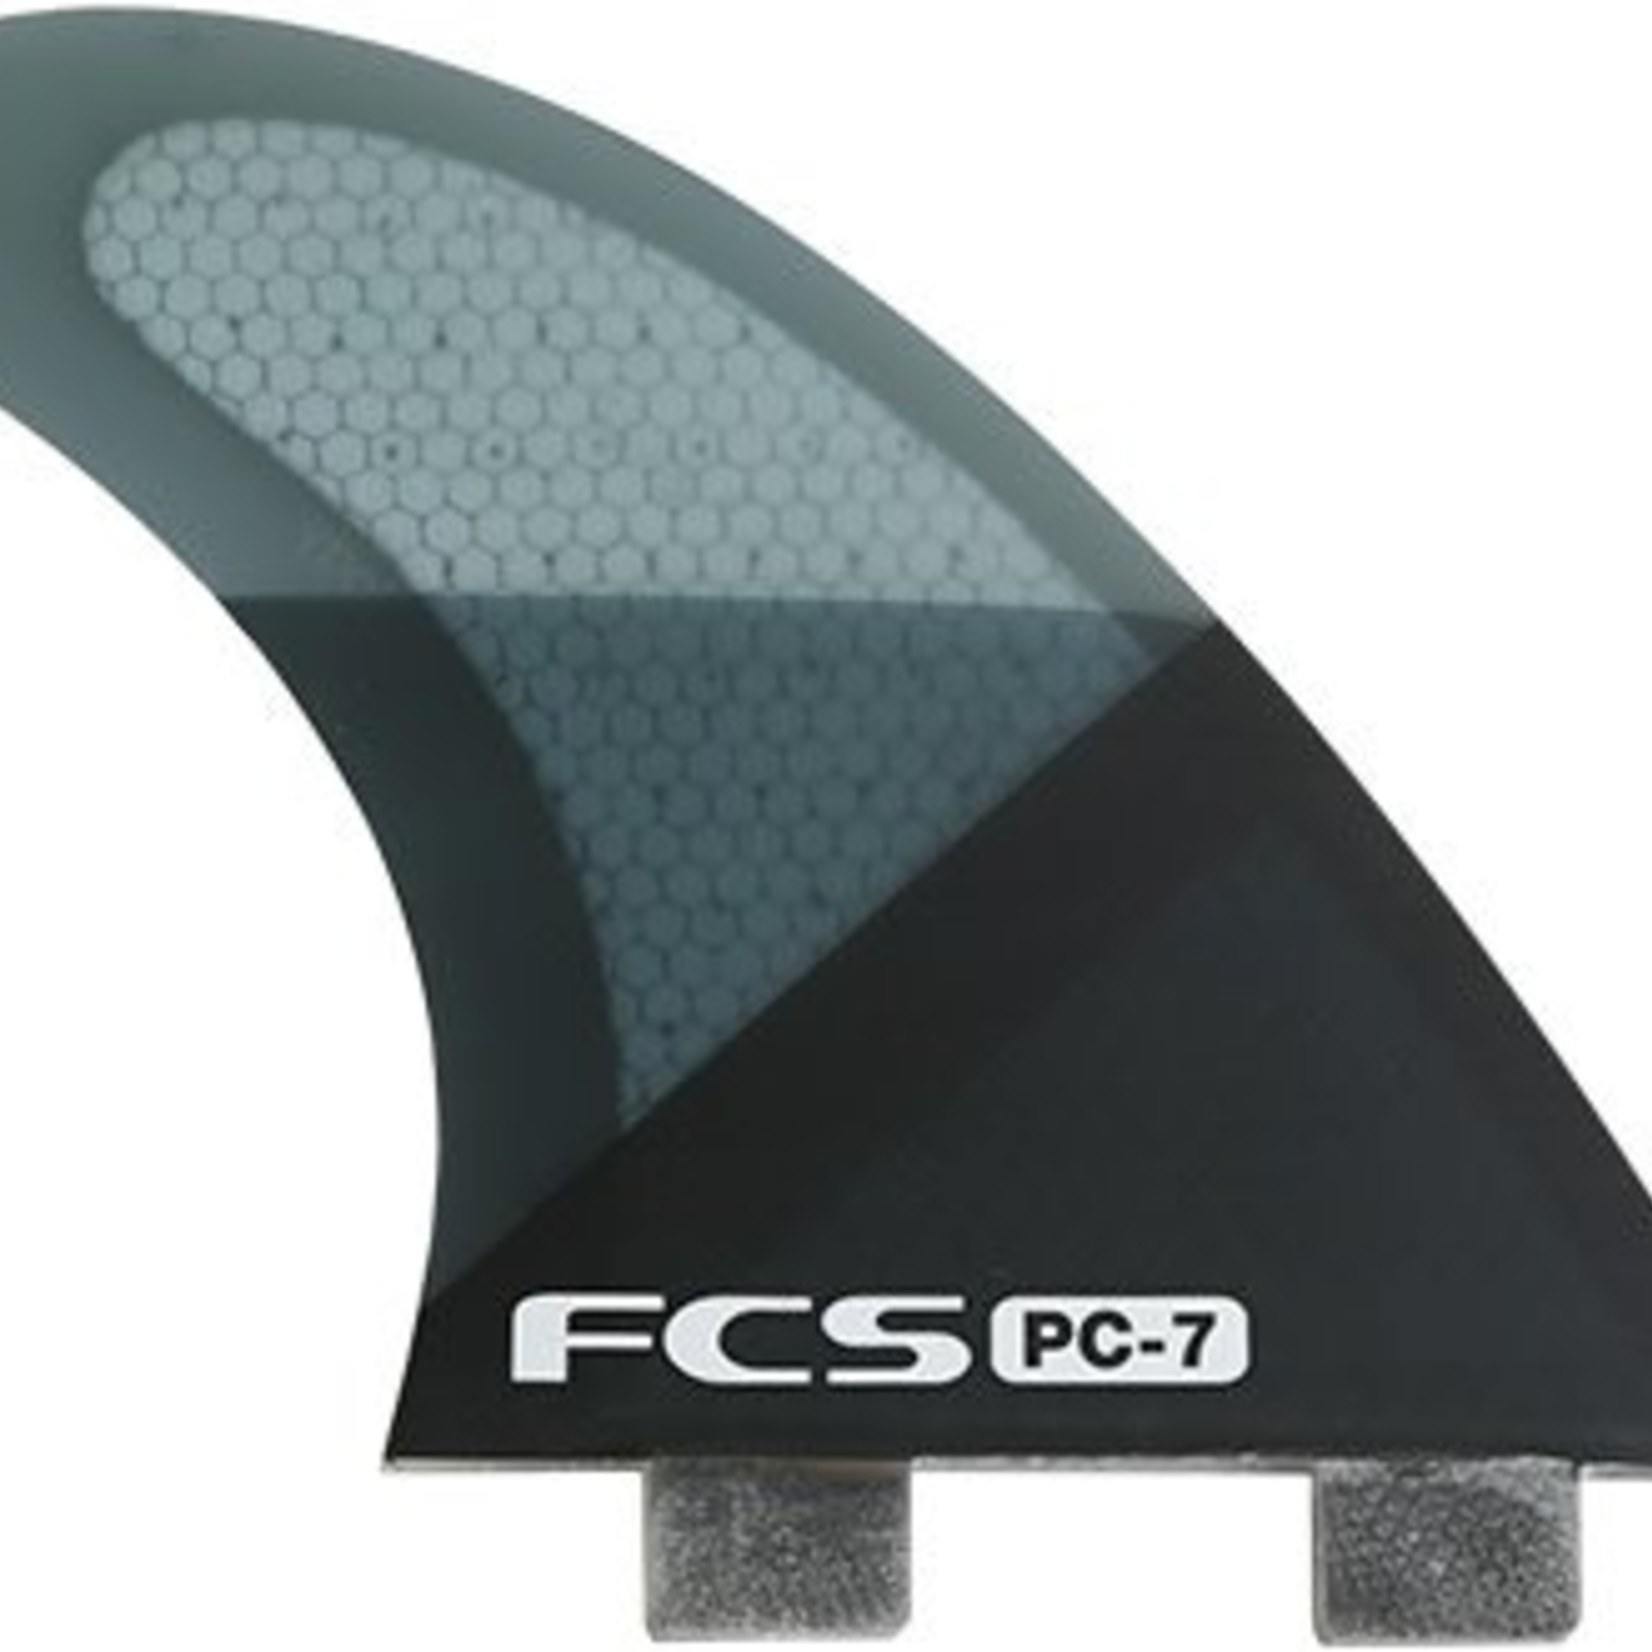 FCS Pc-7 5 fin